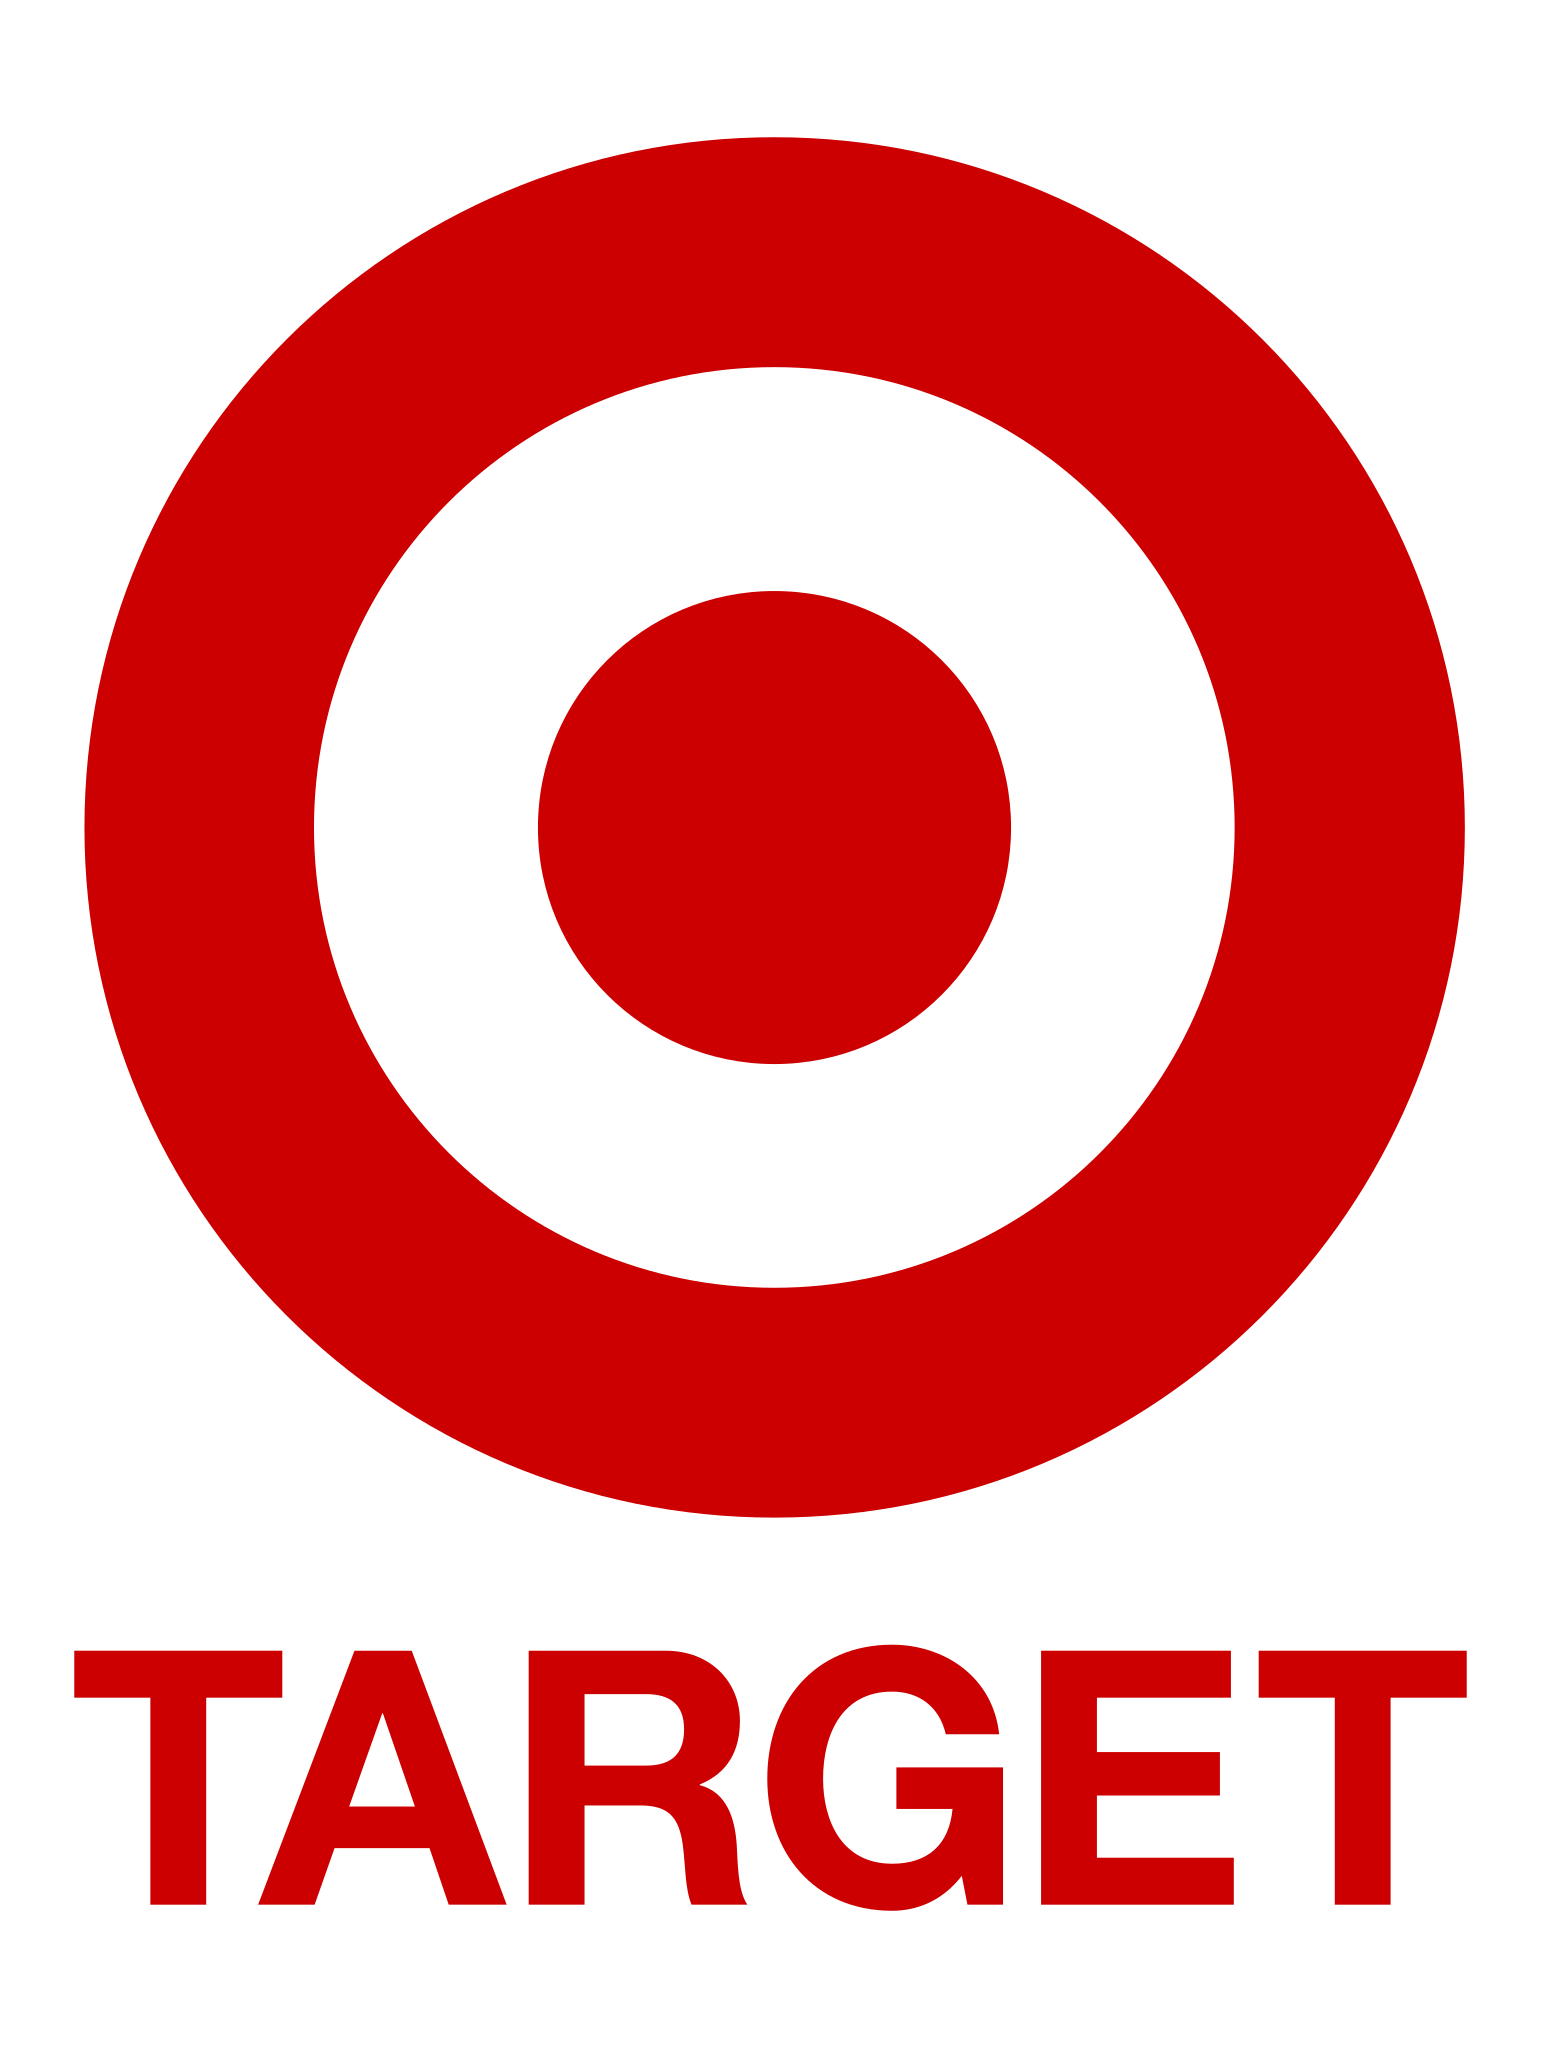 Target_logo.svg.png__PID:7faa70e4-9024-4bd1-8c1e-ecce5cfc126f